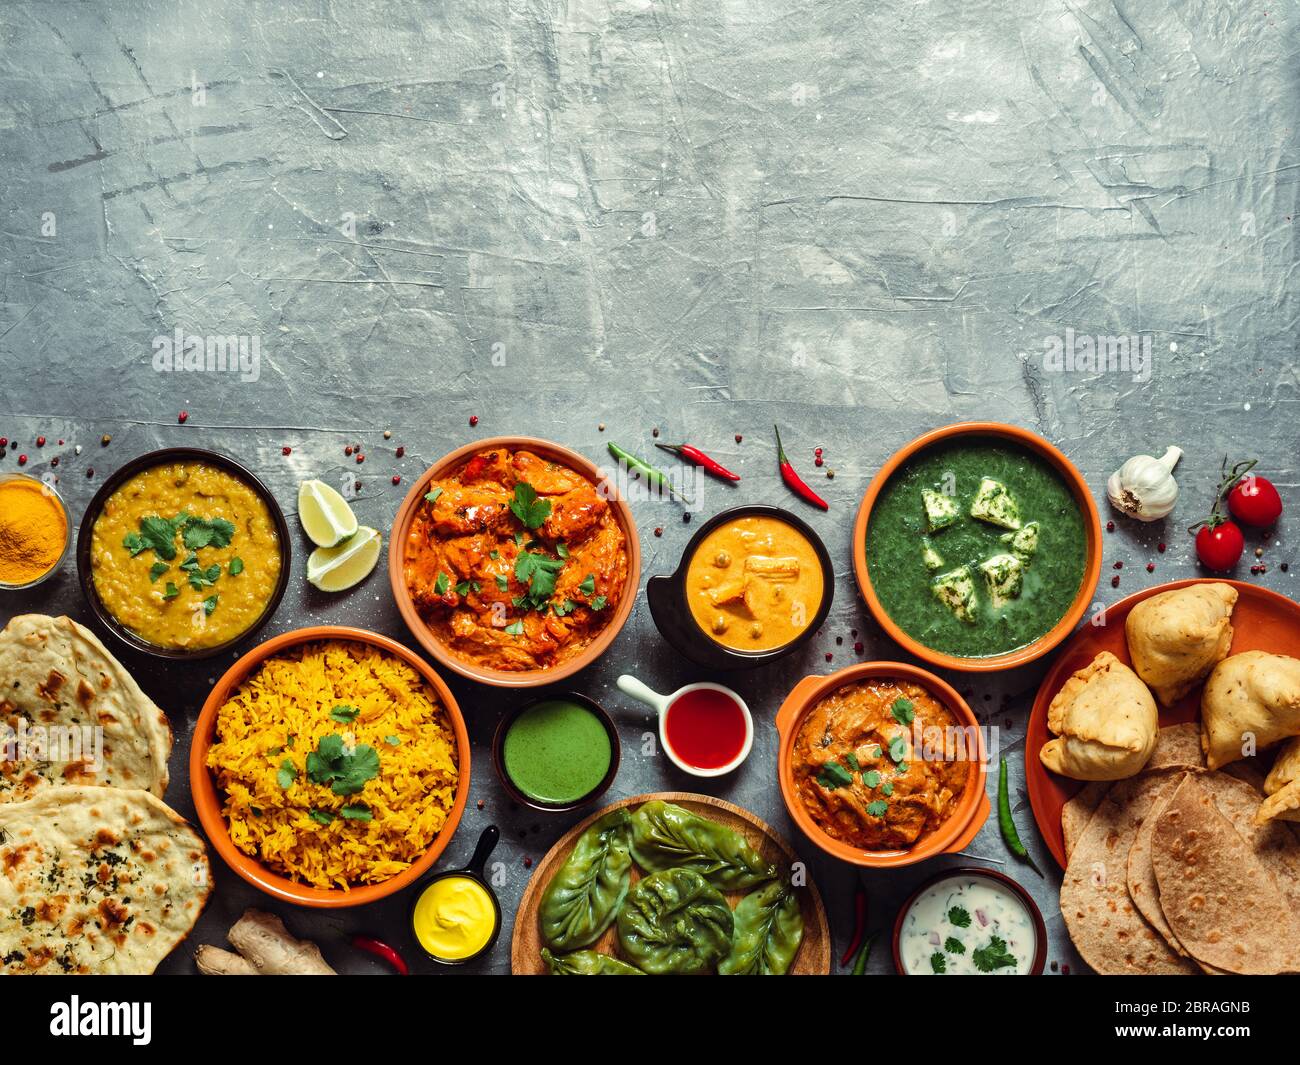 Piatti della cucina indiana: tikka masala, dal, paneer, samosa, chapati, chutney, spezie. Cibo indiano su sfondo grigio. Assortimento di piatti indiani con copie Foto Stock